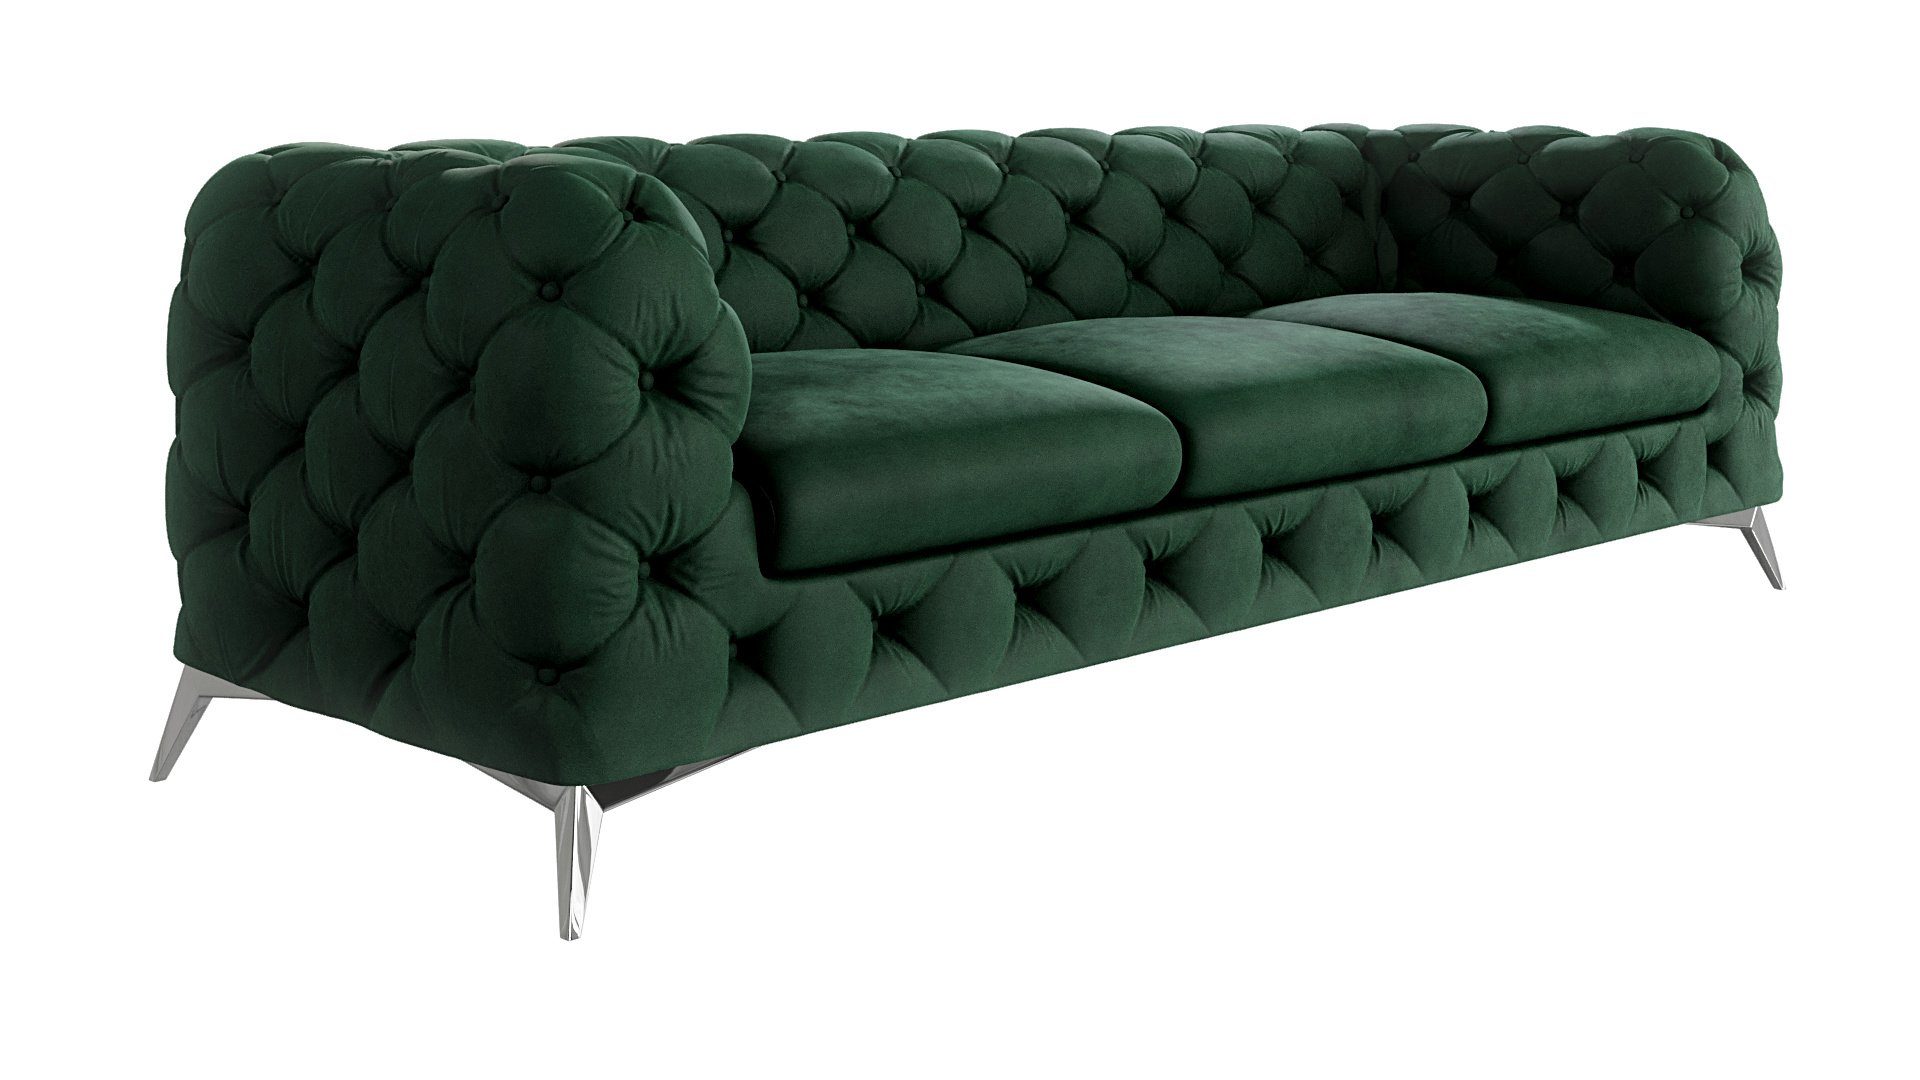 S-Style Möbel 3-Sitzer Chesterfield Sofa Kalina mit Silber Metall Füßen, mit Wellenfederung Flasche Grün